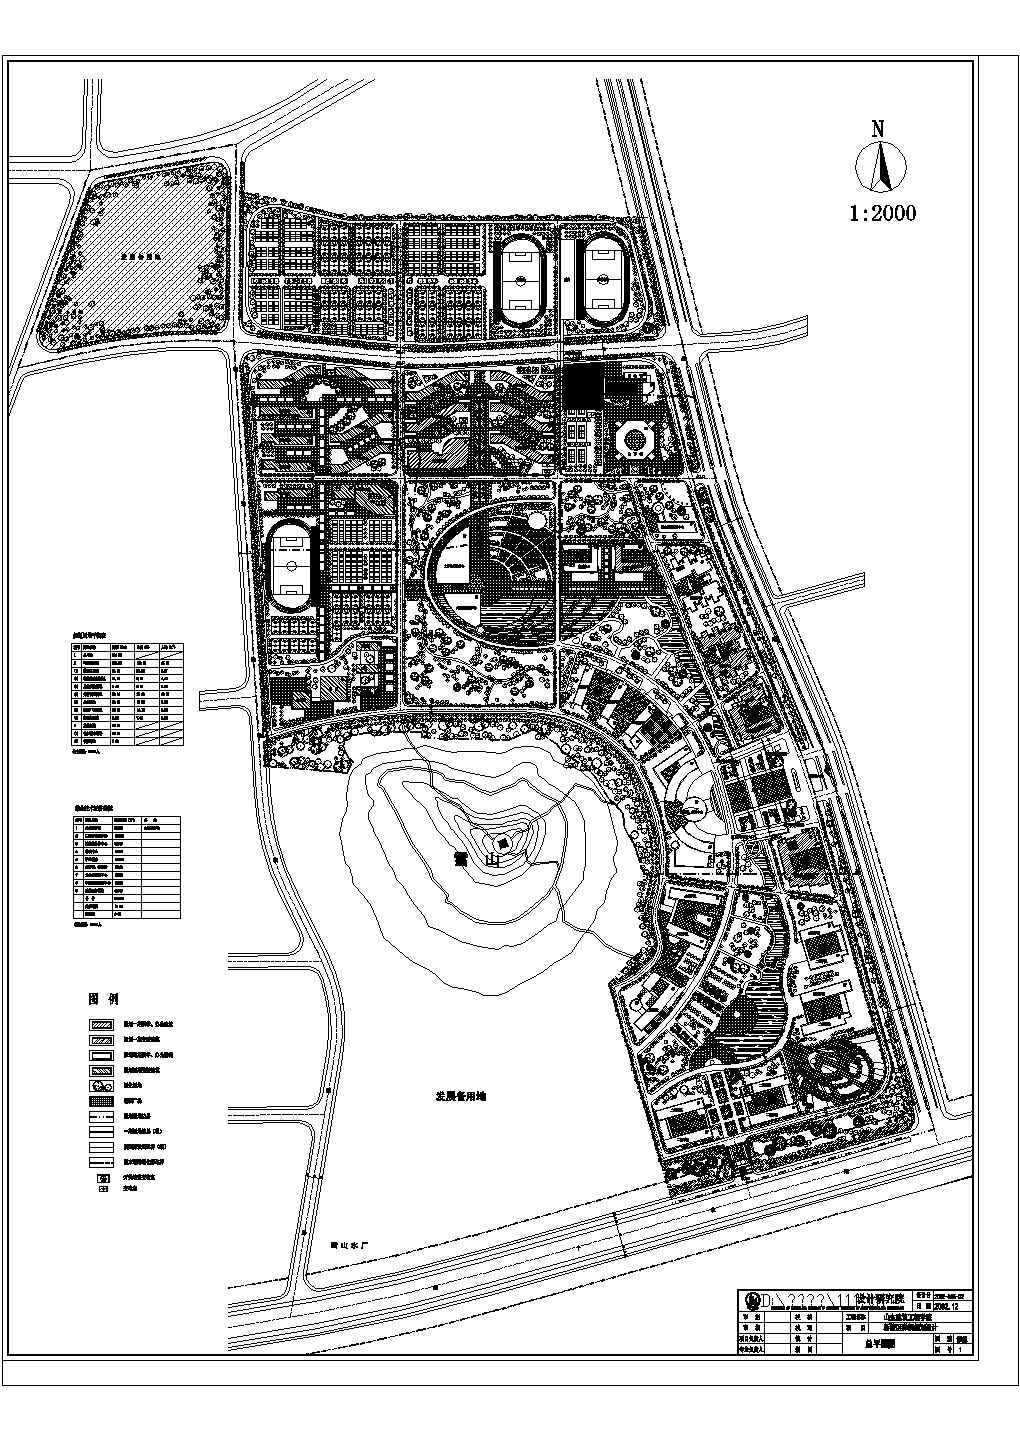 山东建筑大学新校区详细规划设计图